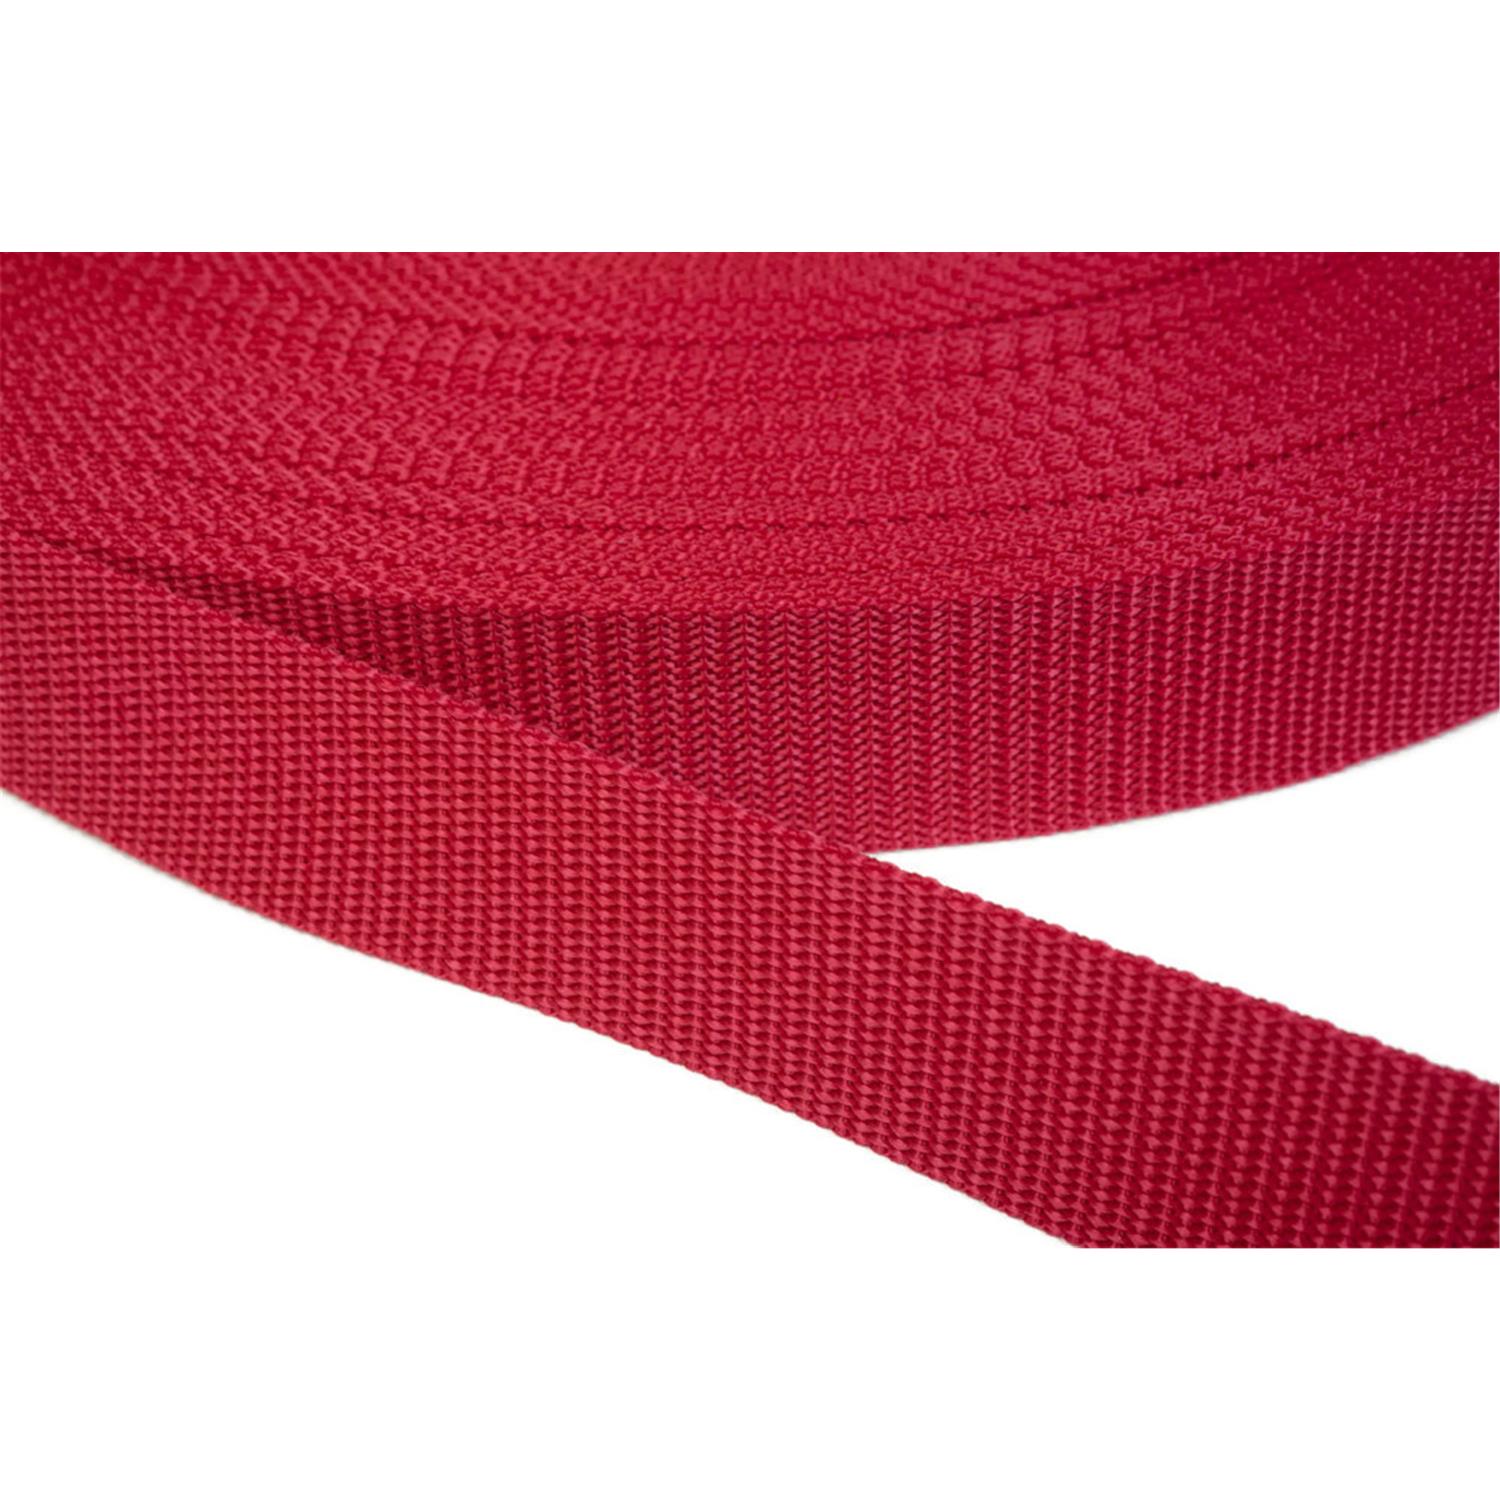 Gurtband 20mm breit aus Polypropylen in 41 Farben 19 - rot 06 Meter